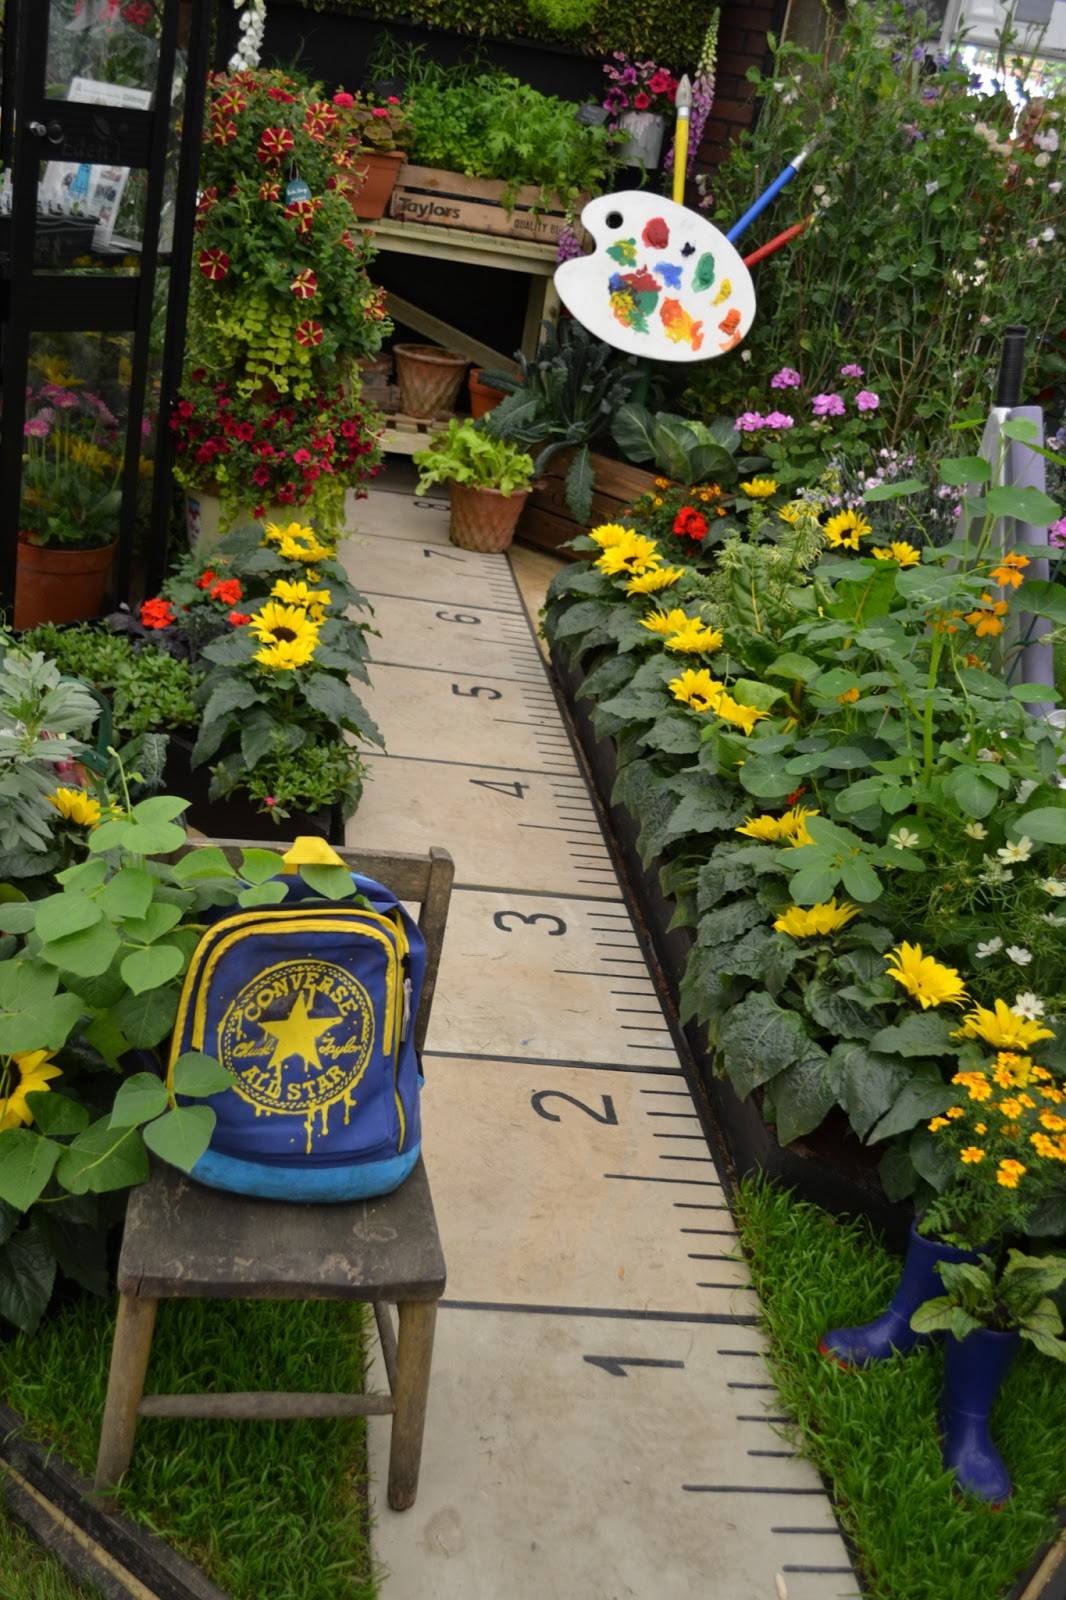 Best Creative Garden Art Projects